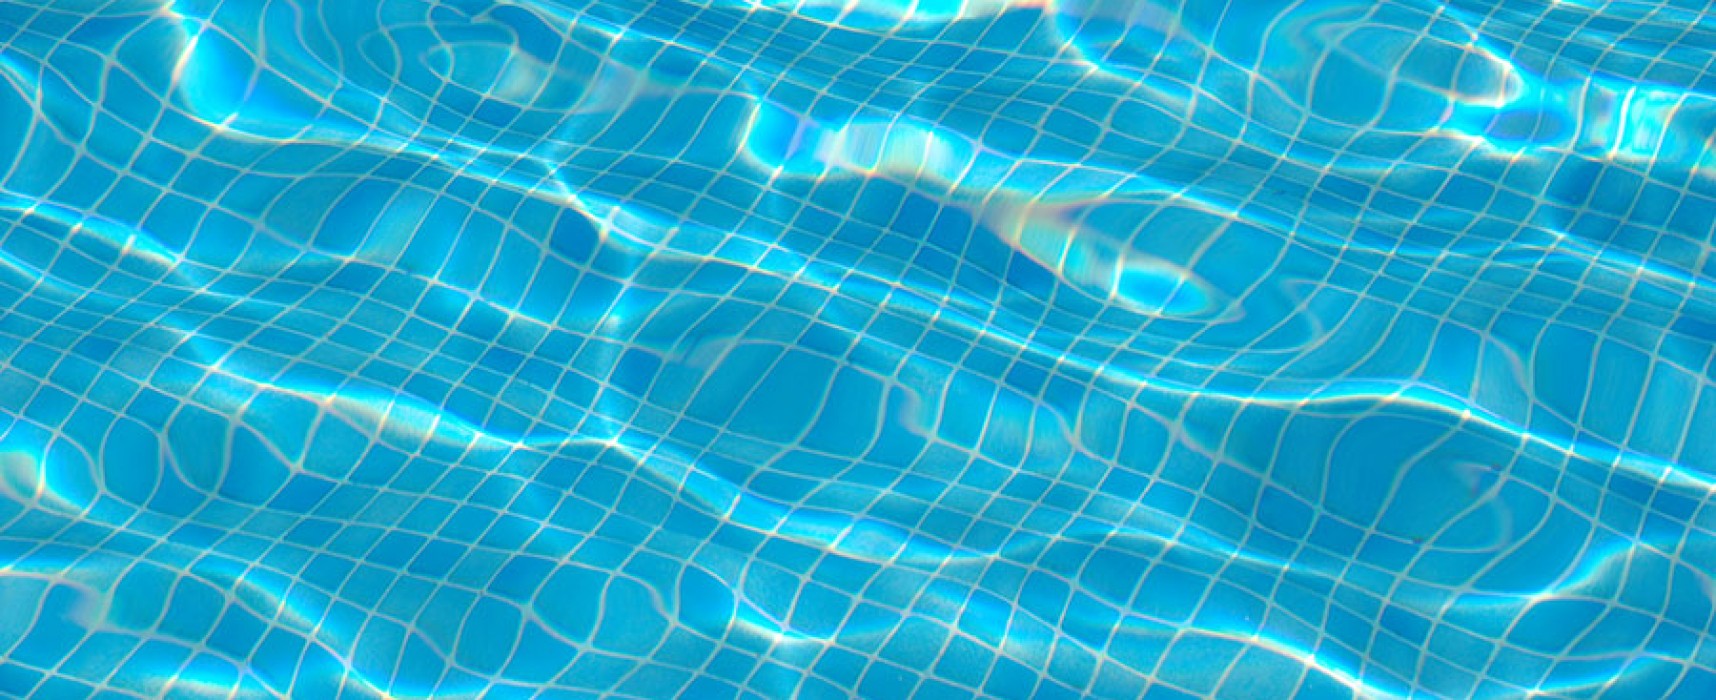 Fermeture semestrielle de la piscine du LMB du mercredi 17 décembre 2014 au dimanche 4 janvier 2015 inclus